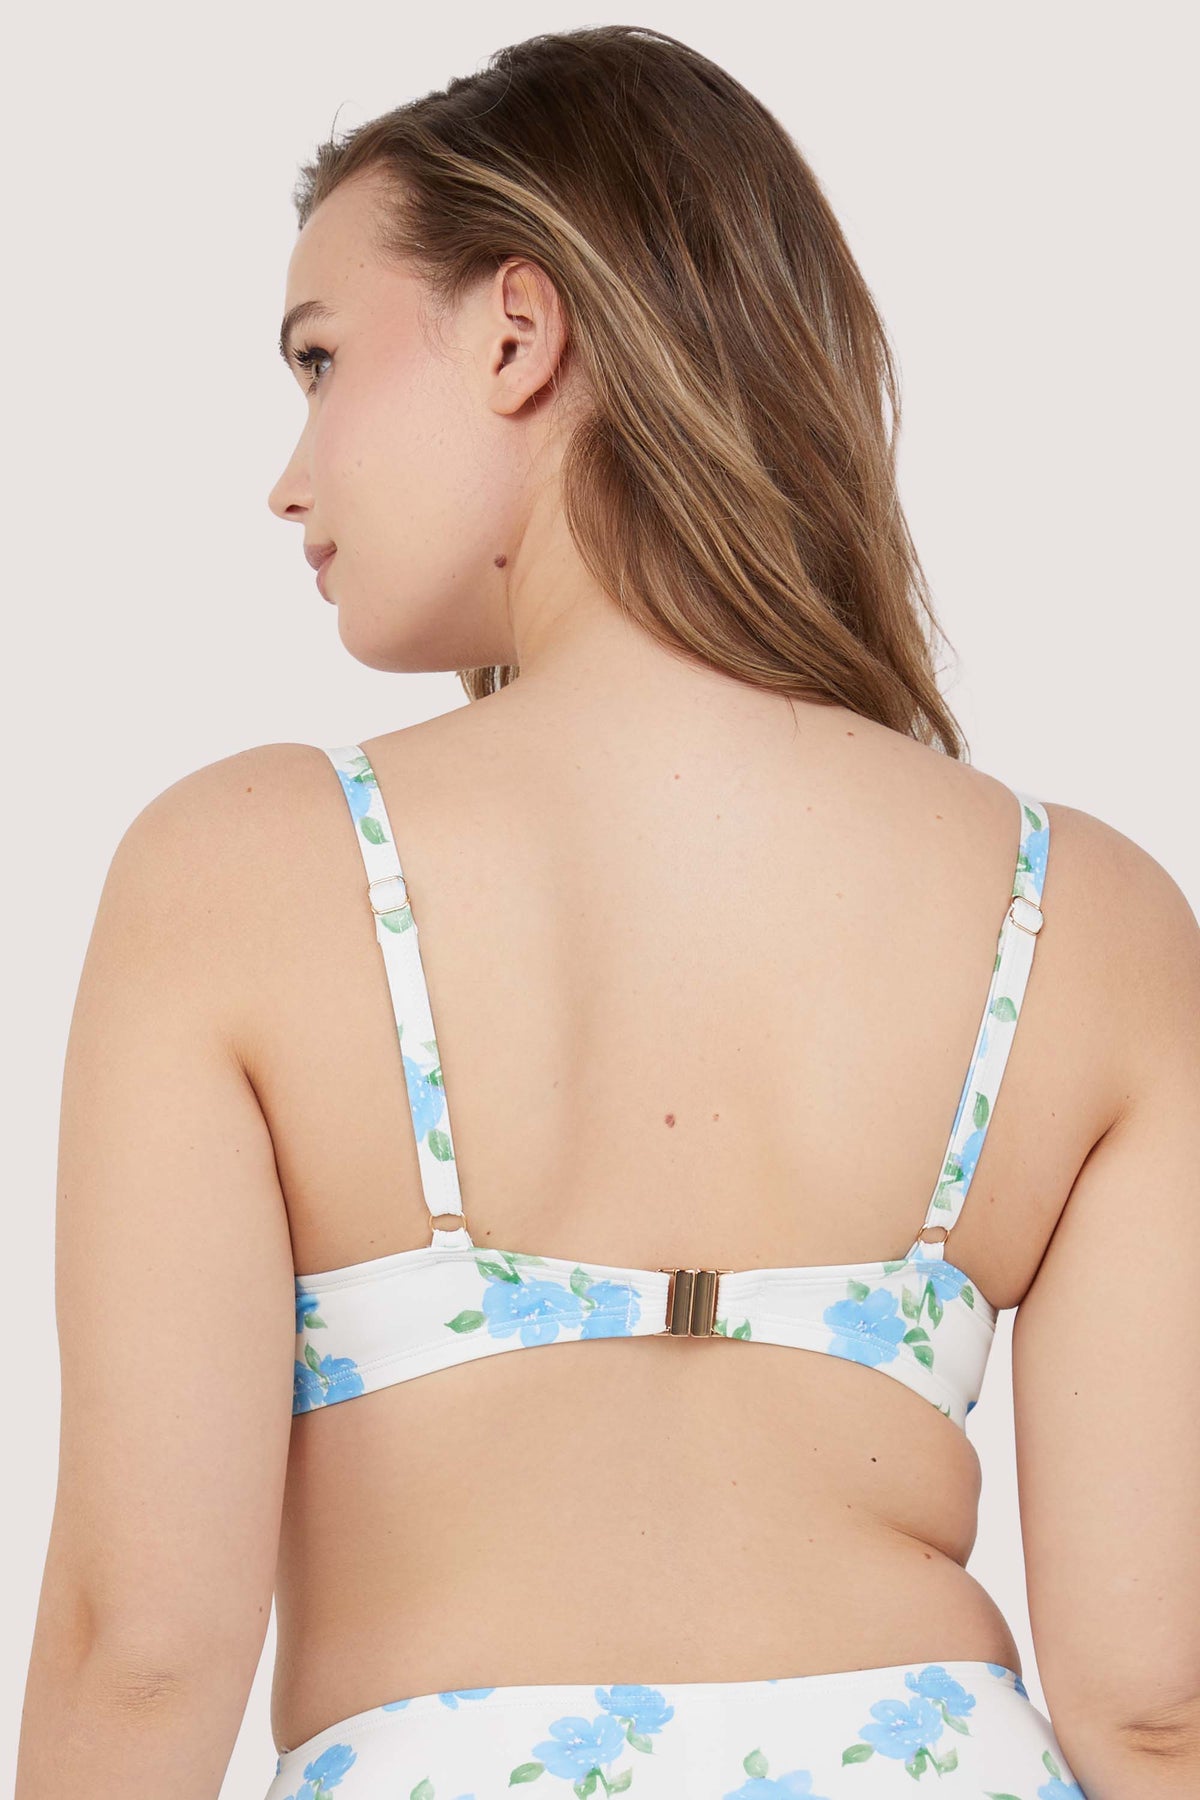 Model shows adjustable shoulder straps and clip fastening back of floral bikini top